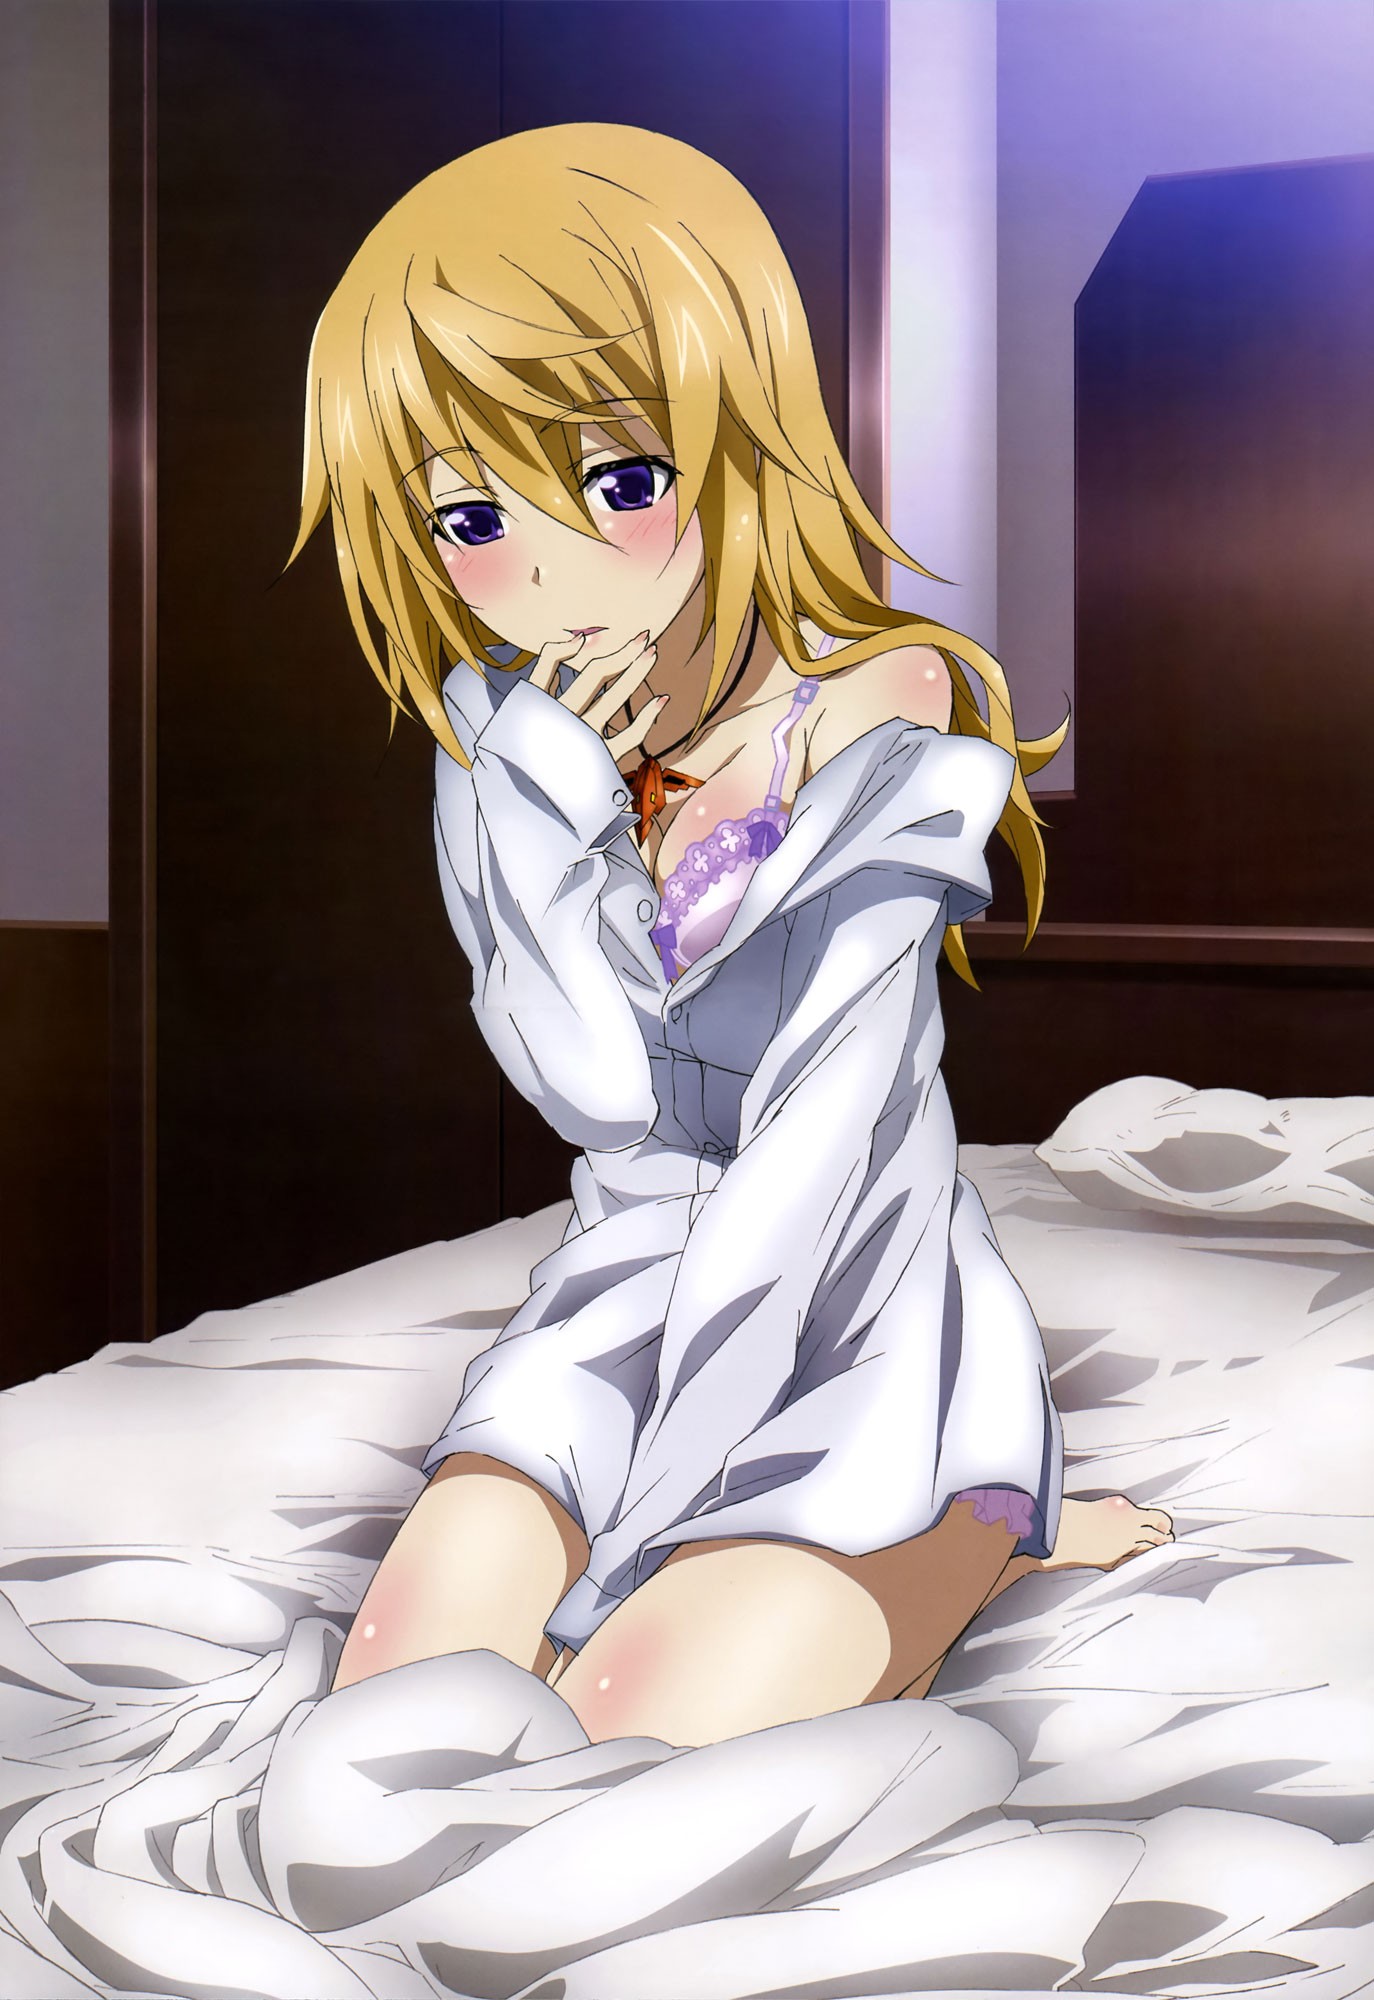 Anime 1374x2000 anime anime girls Infinite Stratos Dunois Charlotte blonde purple eyes in bed kneeling looking away bra hand between legs